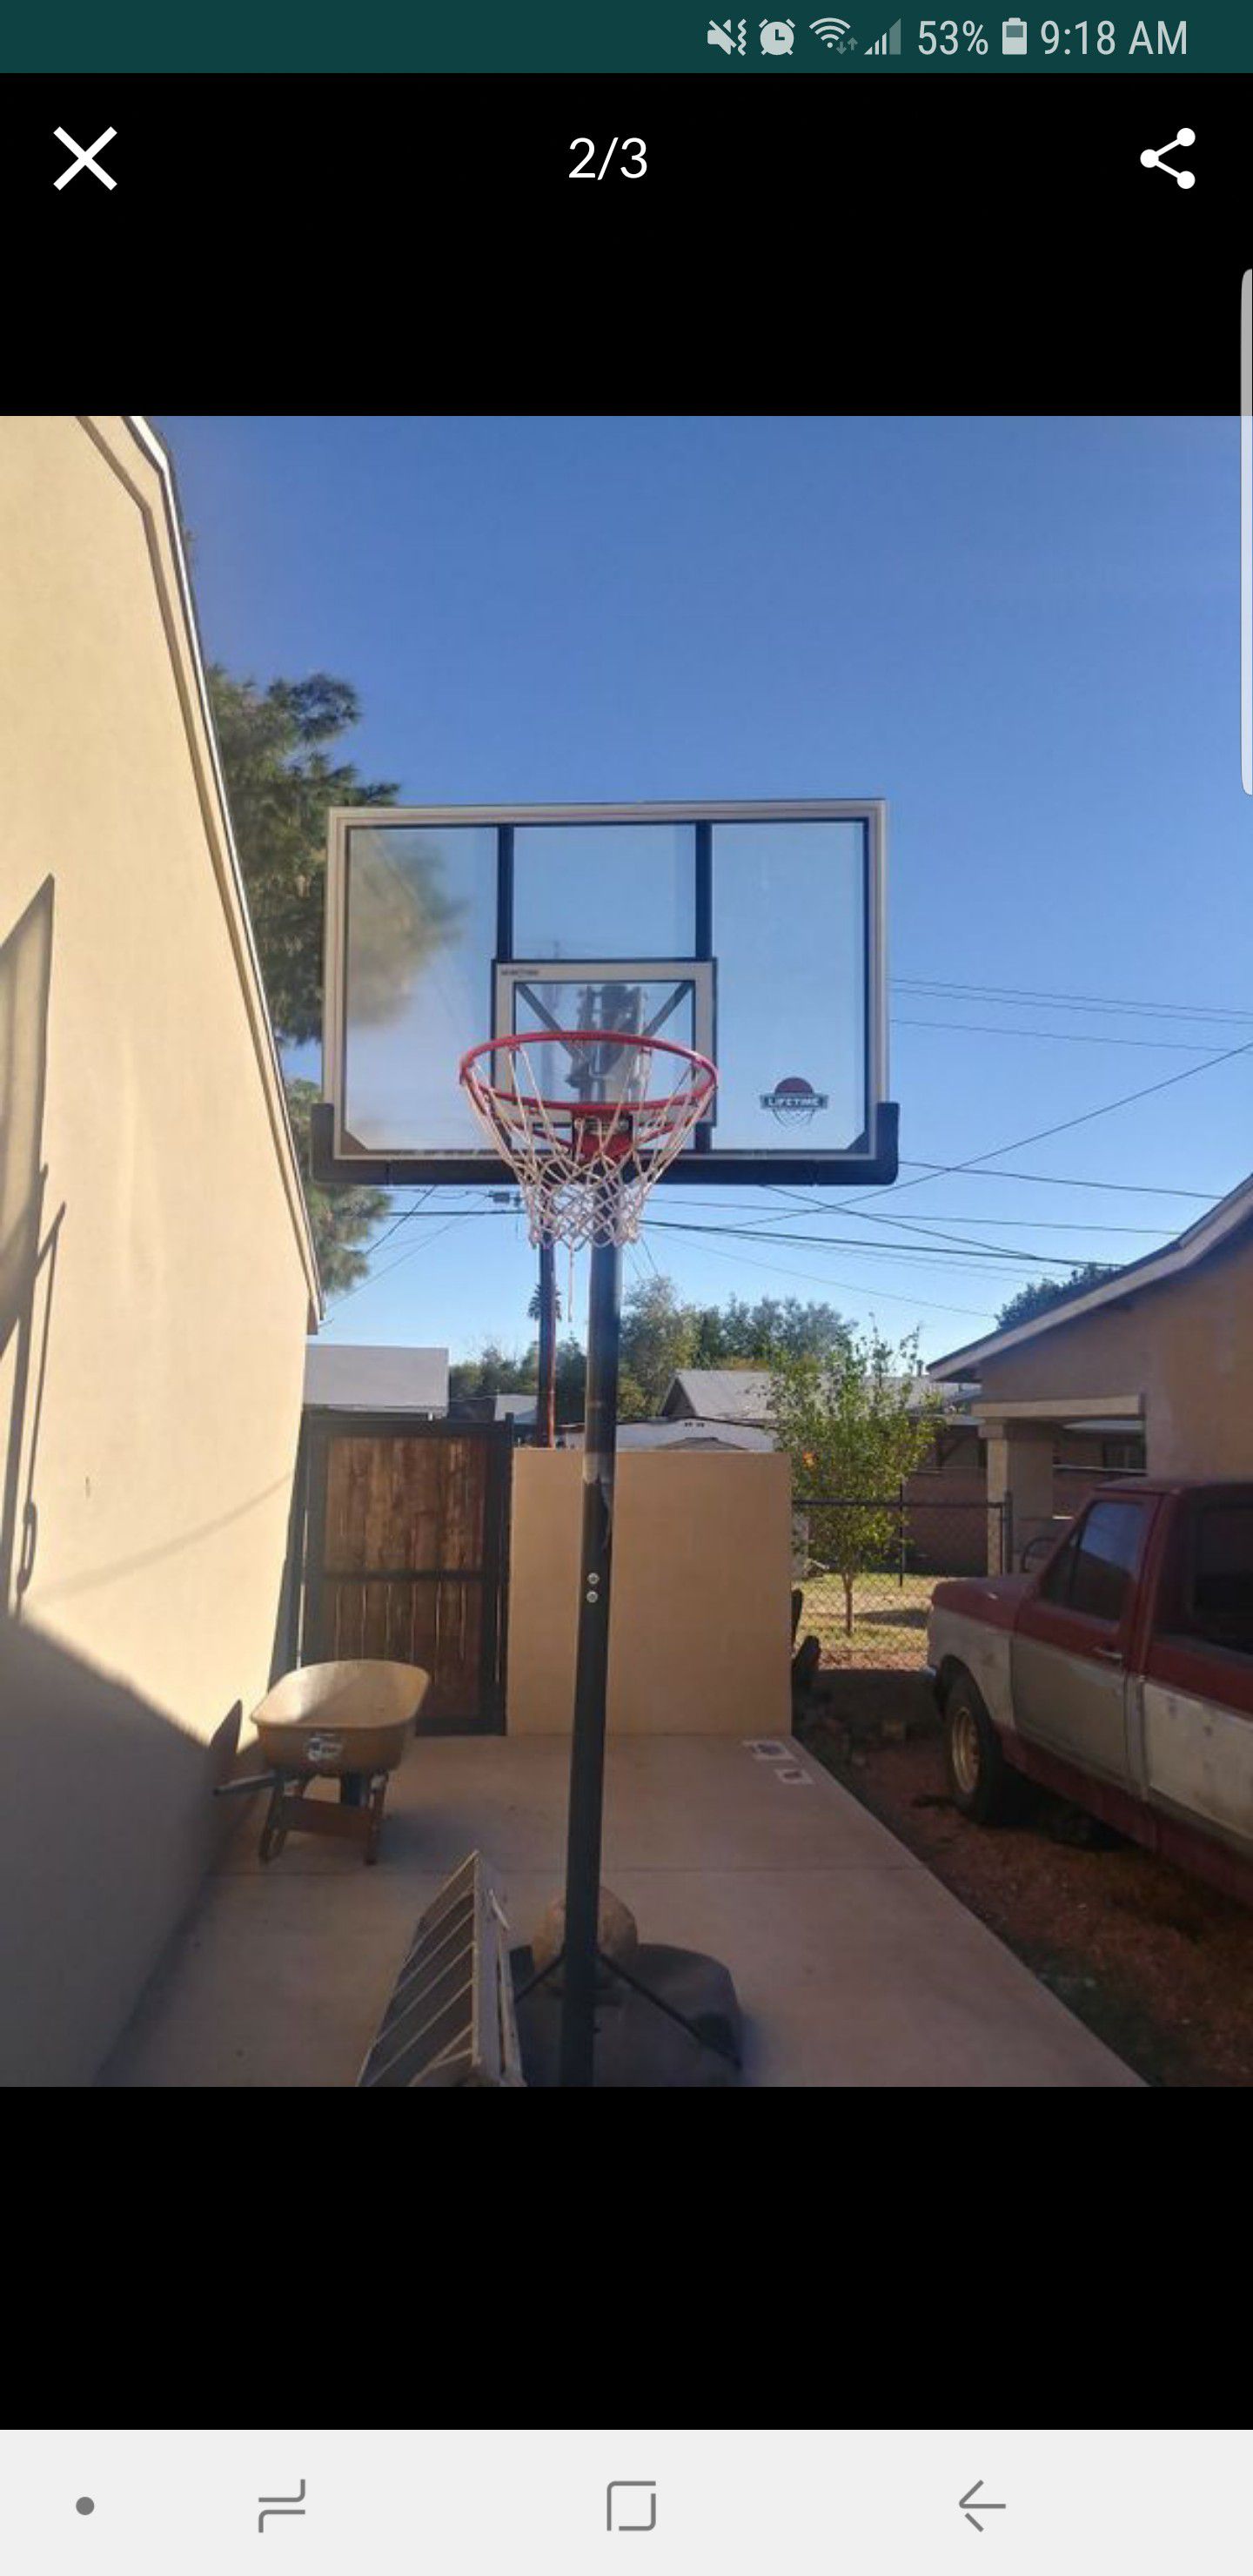 Basketball hoop / court